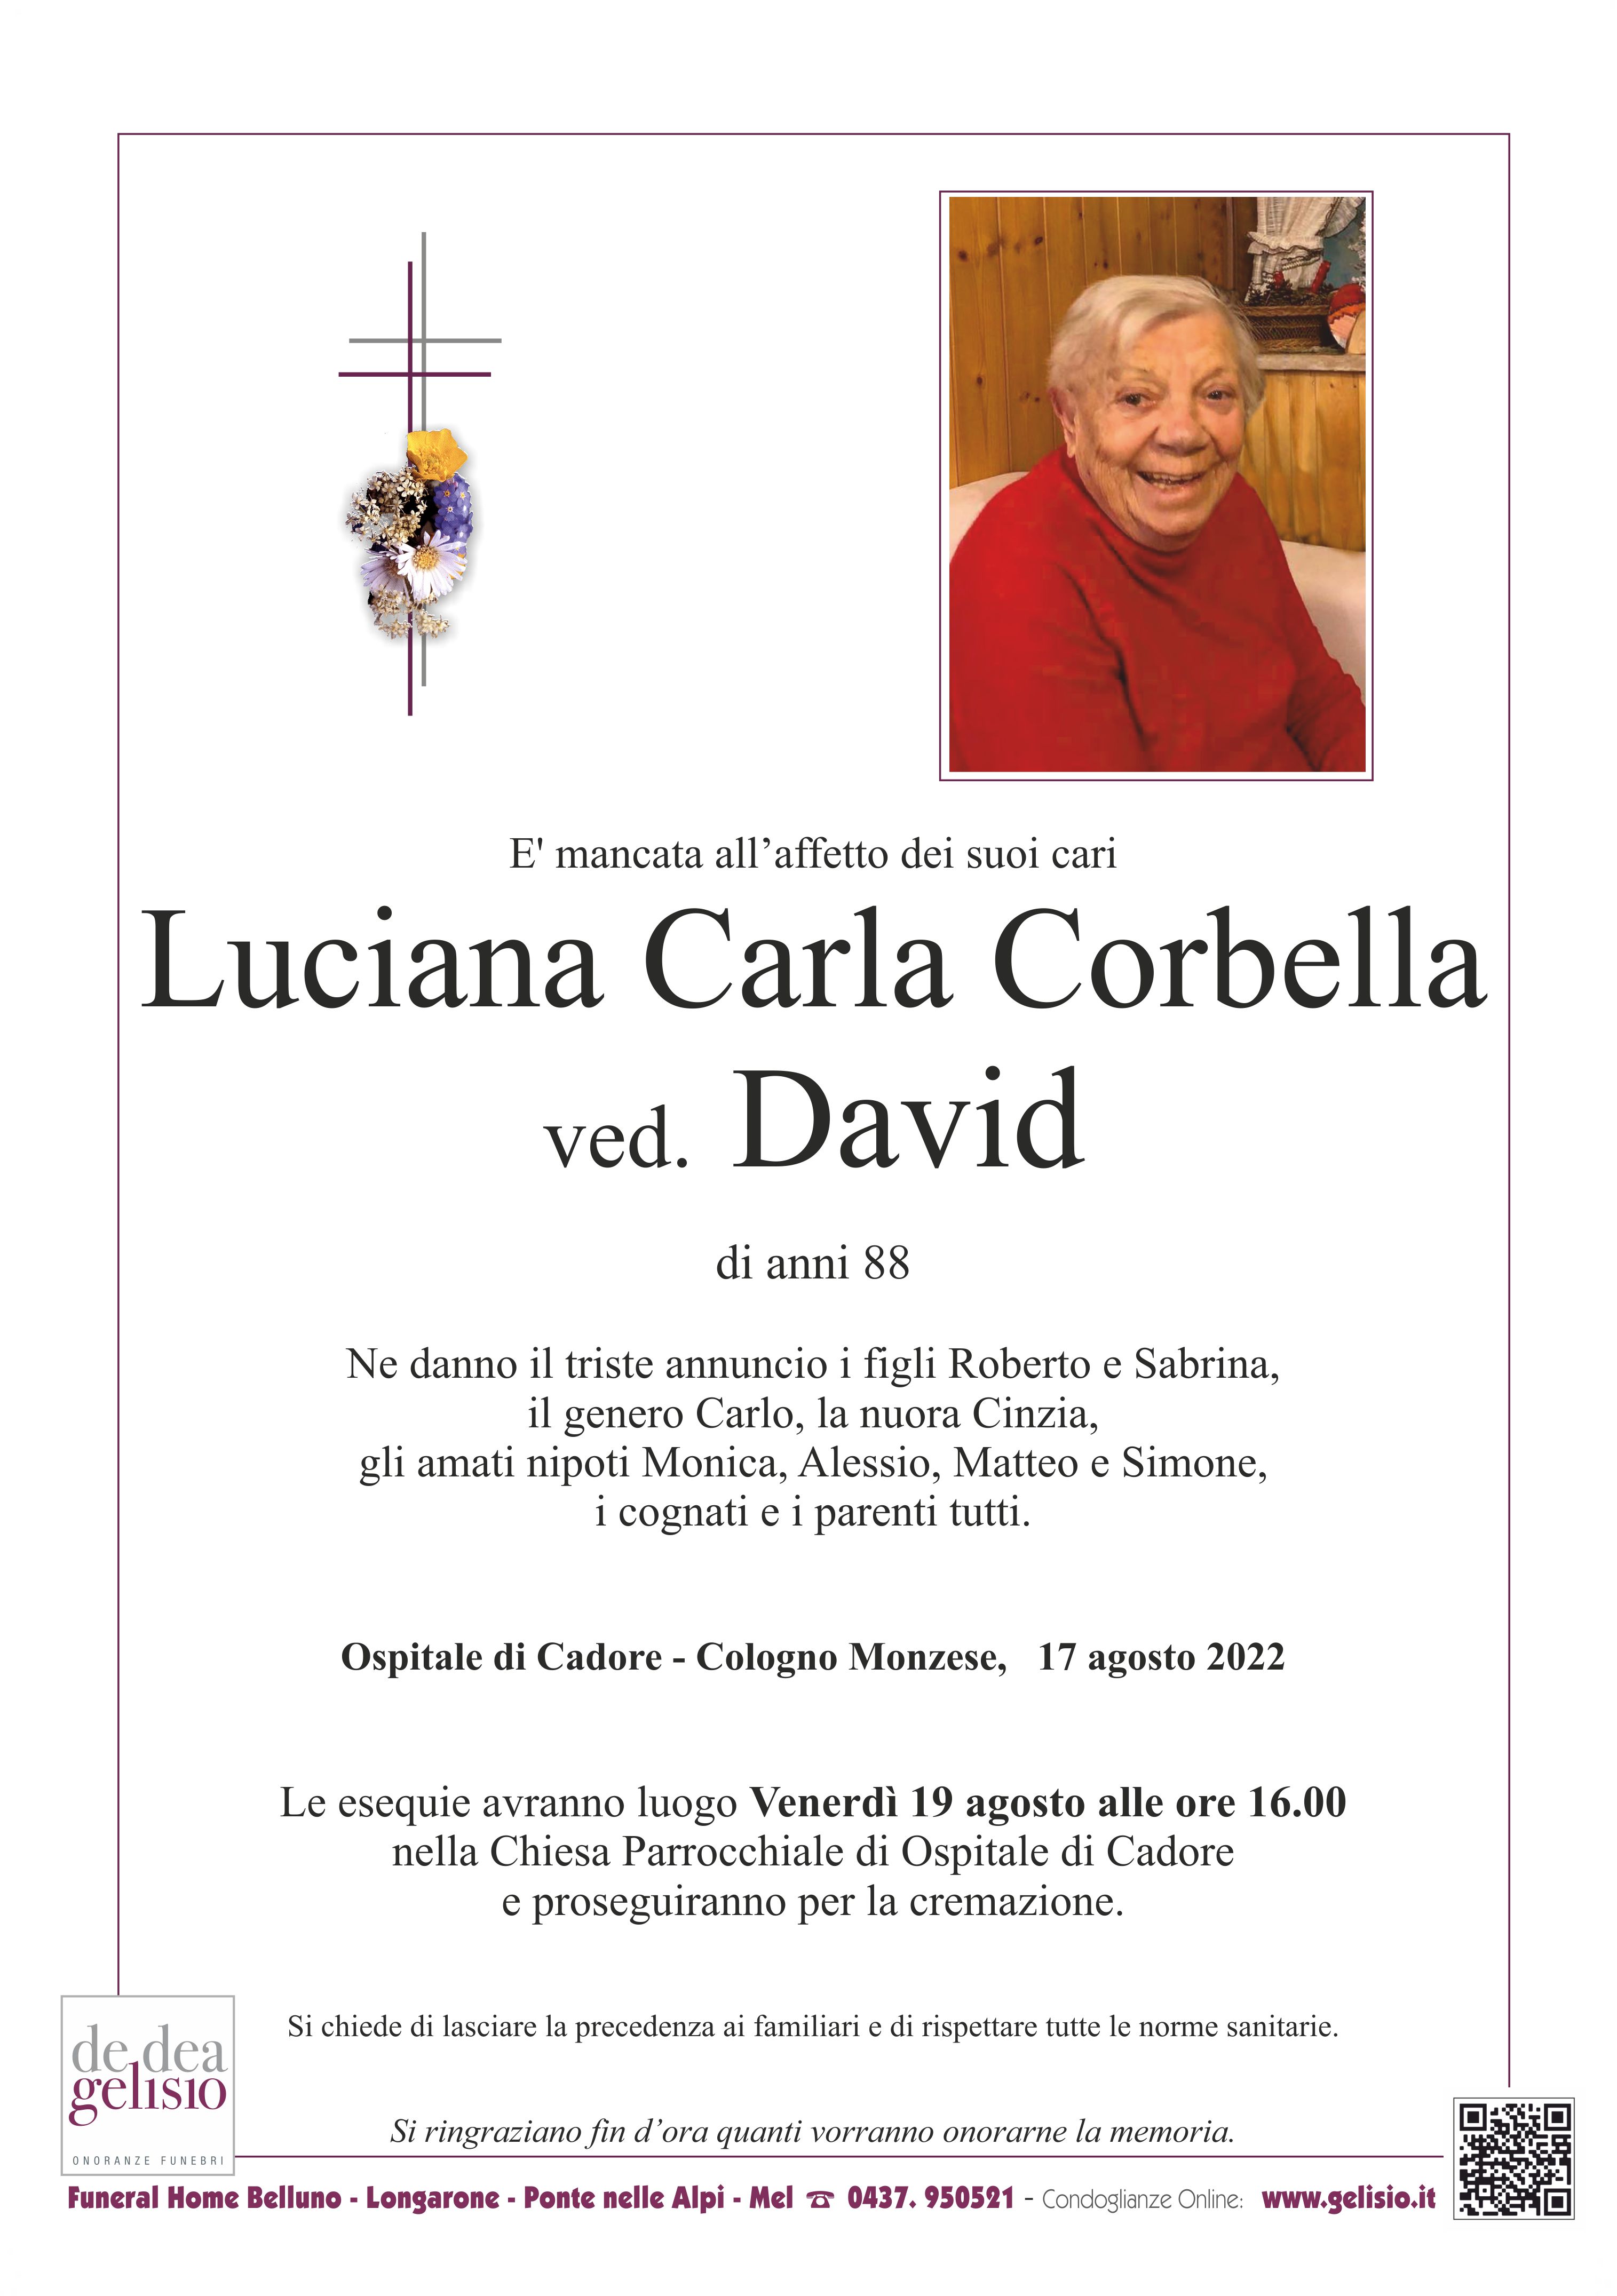 Corbella Luciana Carla